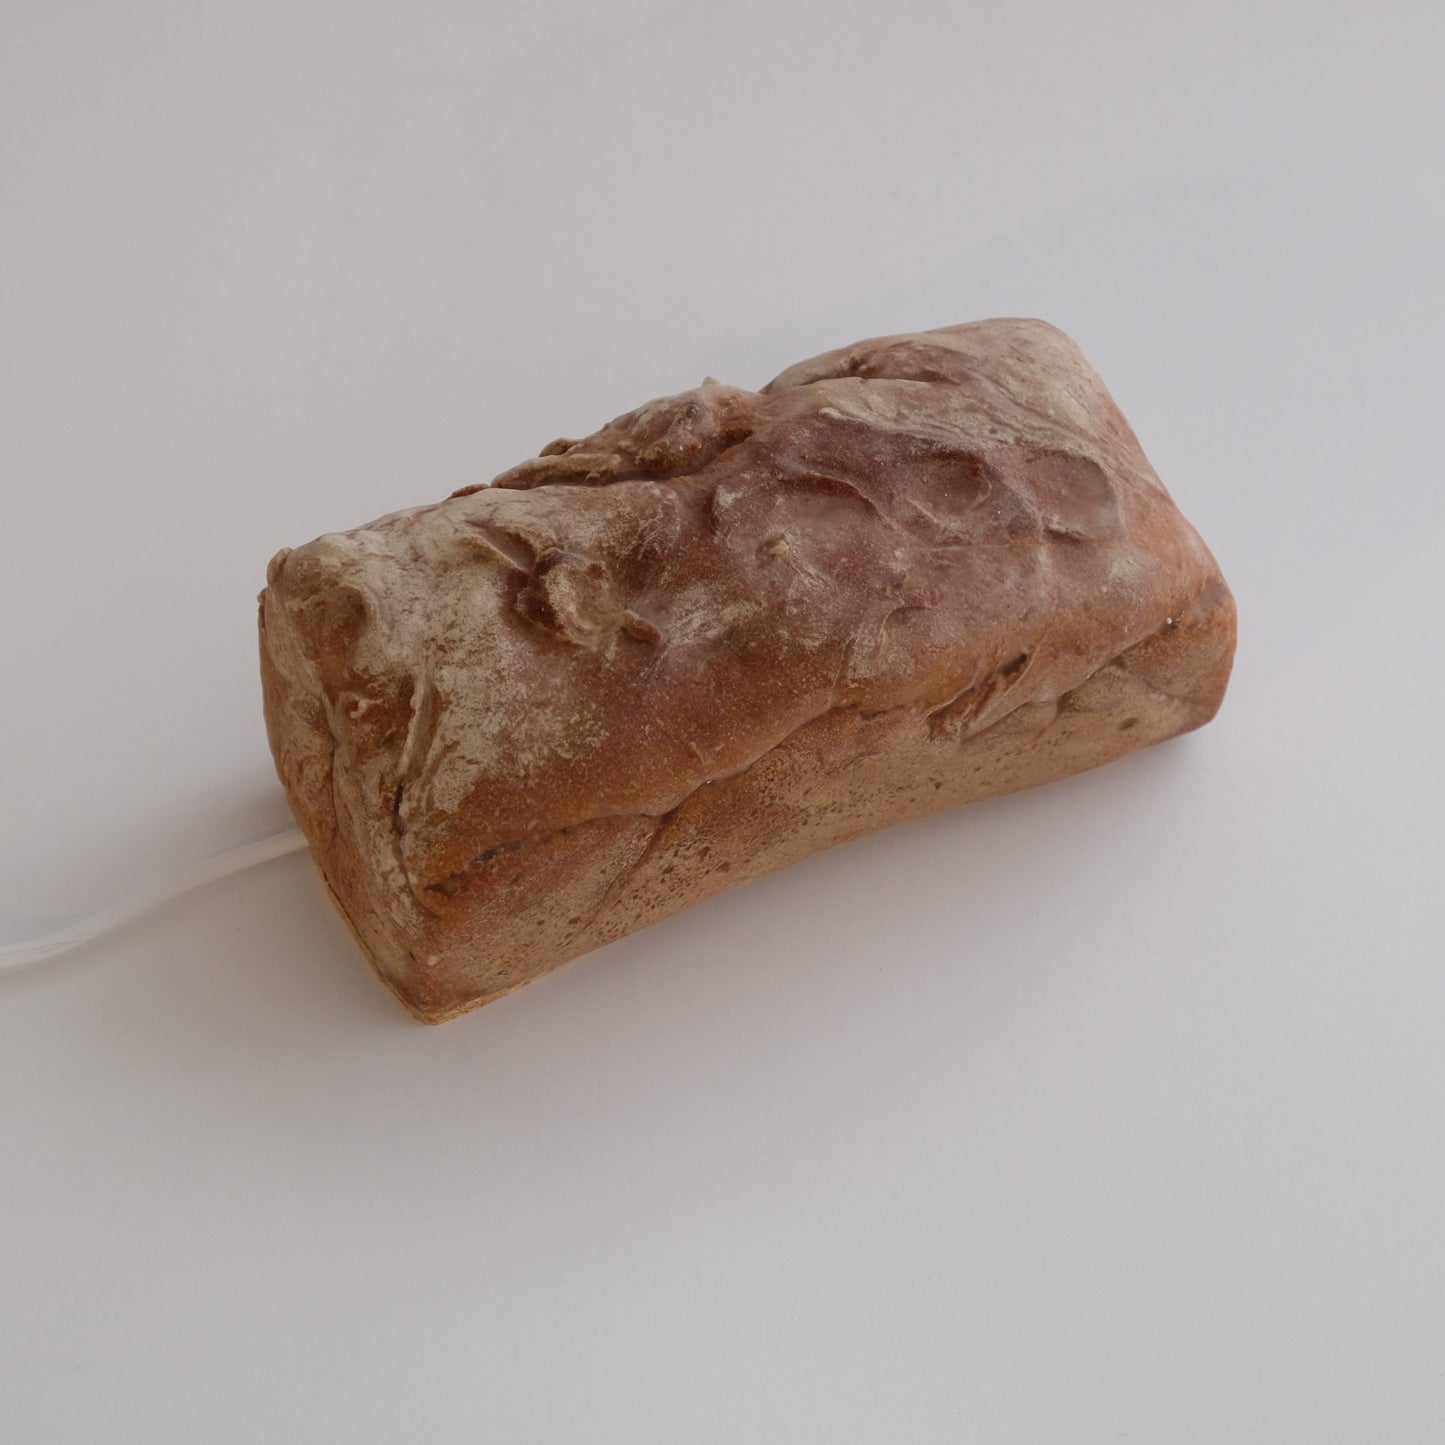 [Edición limitada] Bread Compreh Bread Lamp (tipo de salida)